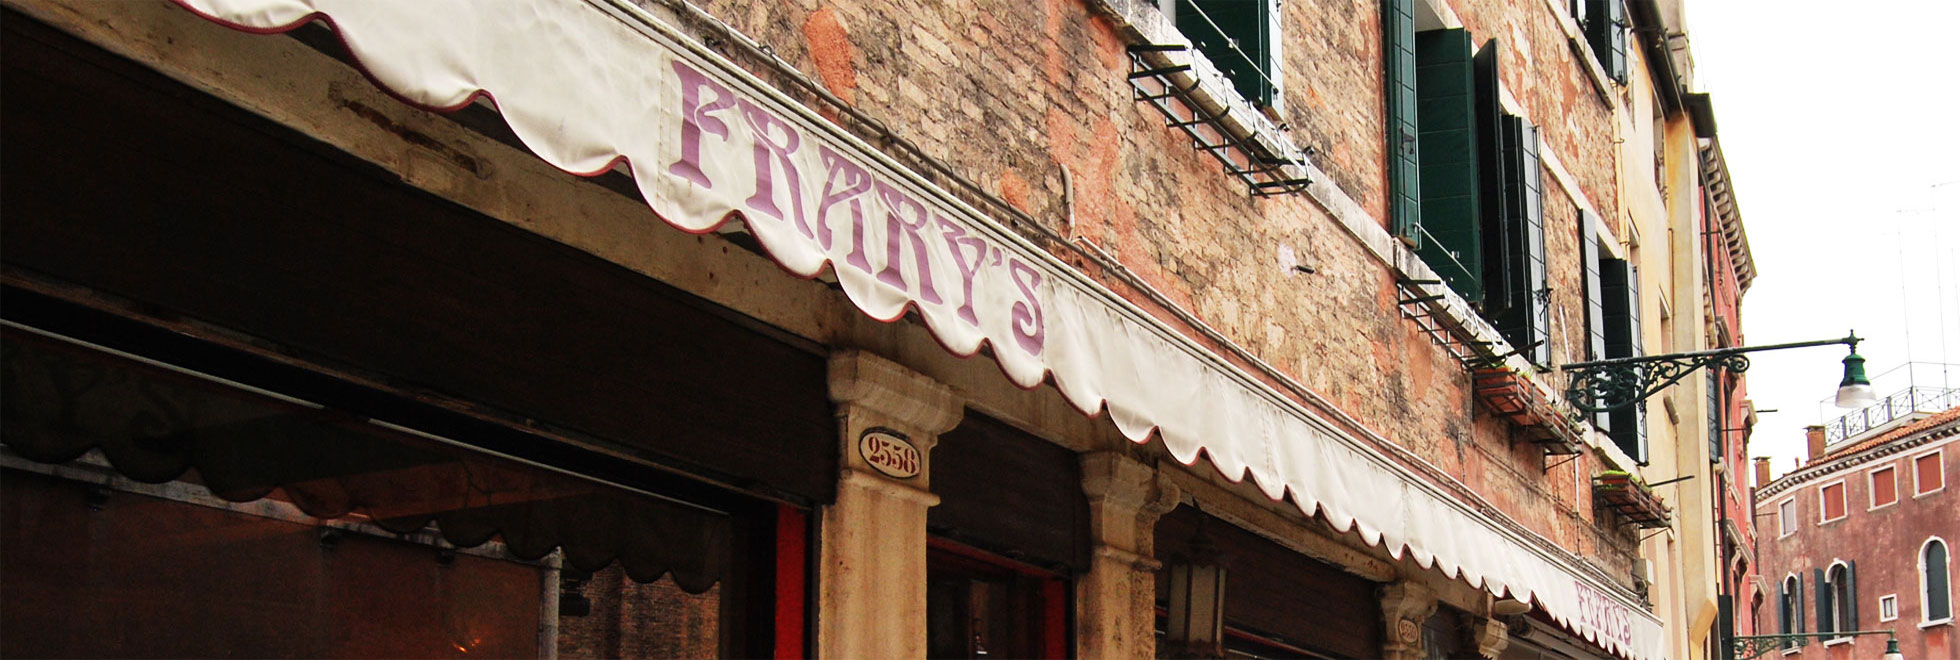 Ristorante Frary's - Calle Veneziana